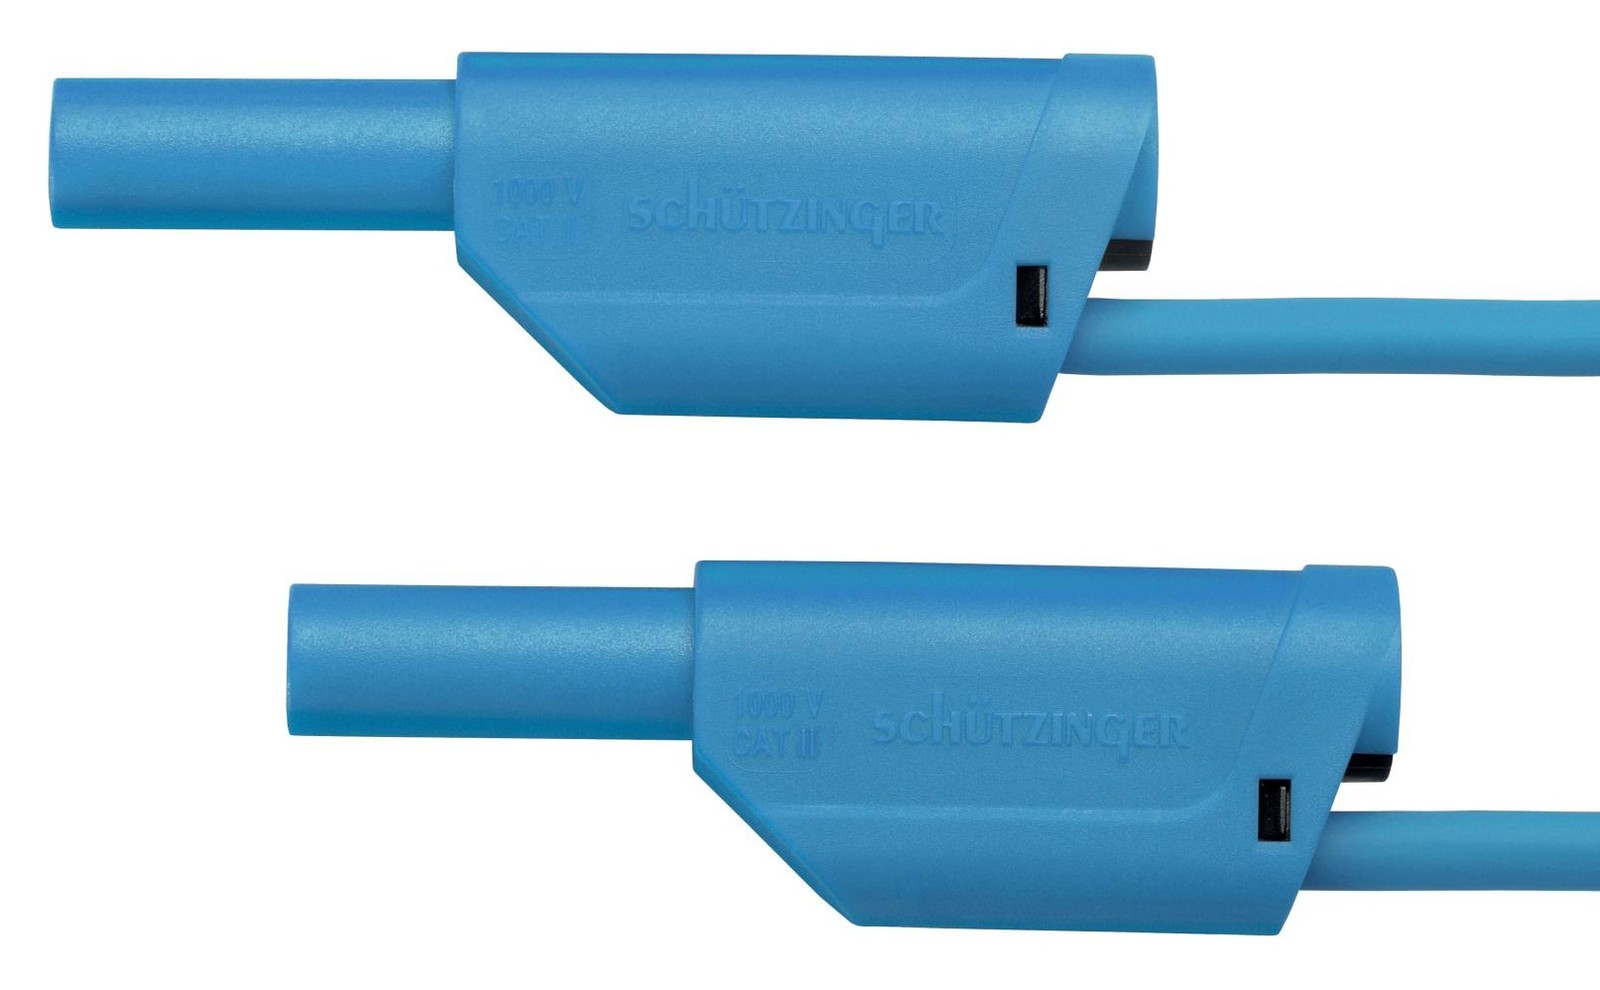 Schutzinger Vsfk 5000 / 1 / 200 / Bl Test Lead, 4mm Stackable Banana Plug, 2M